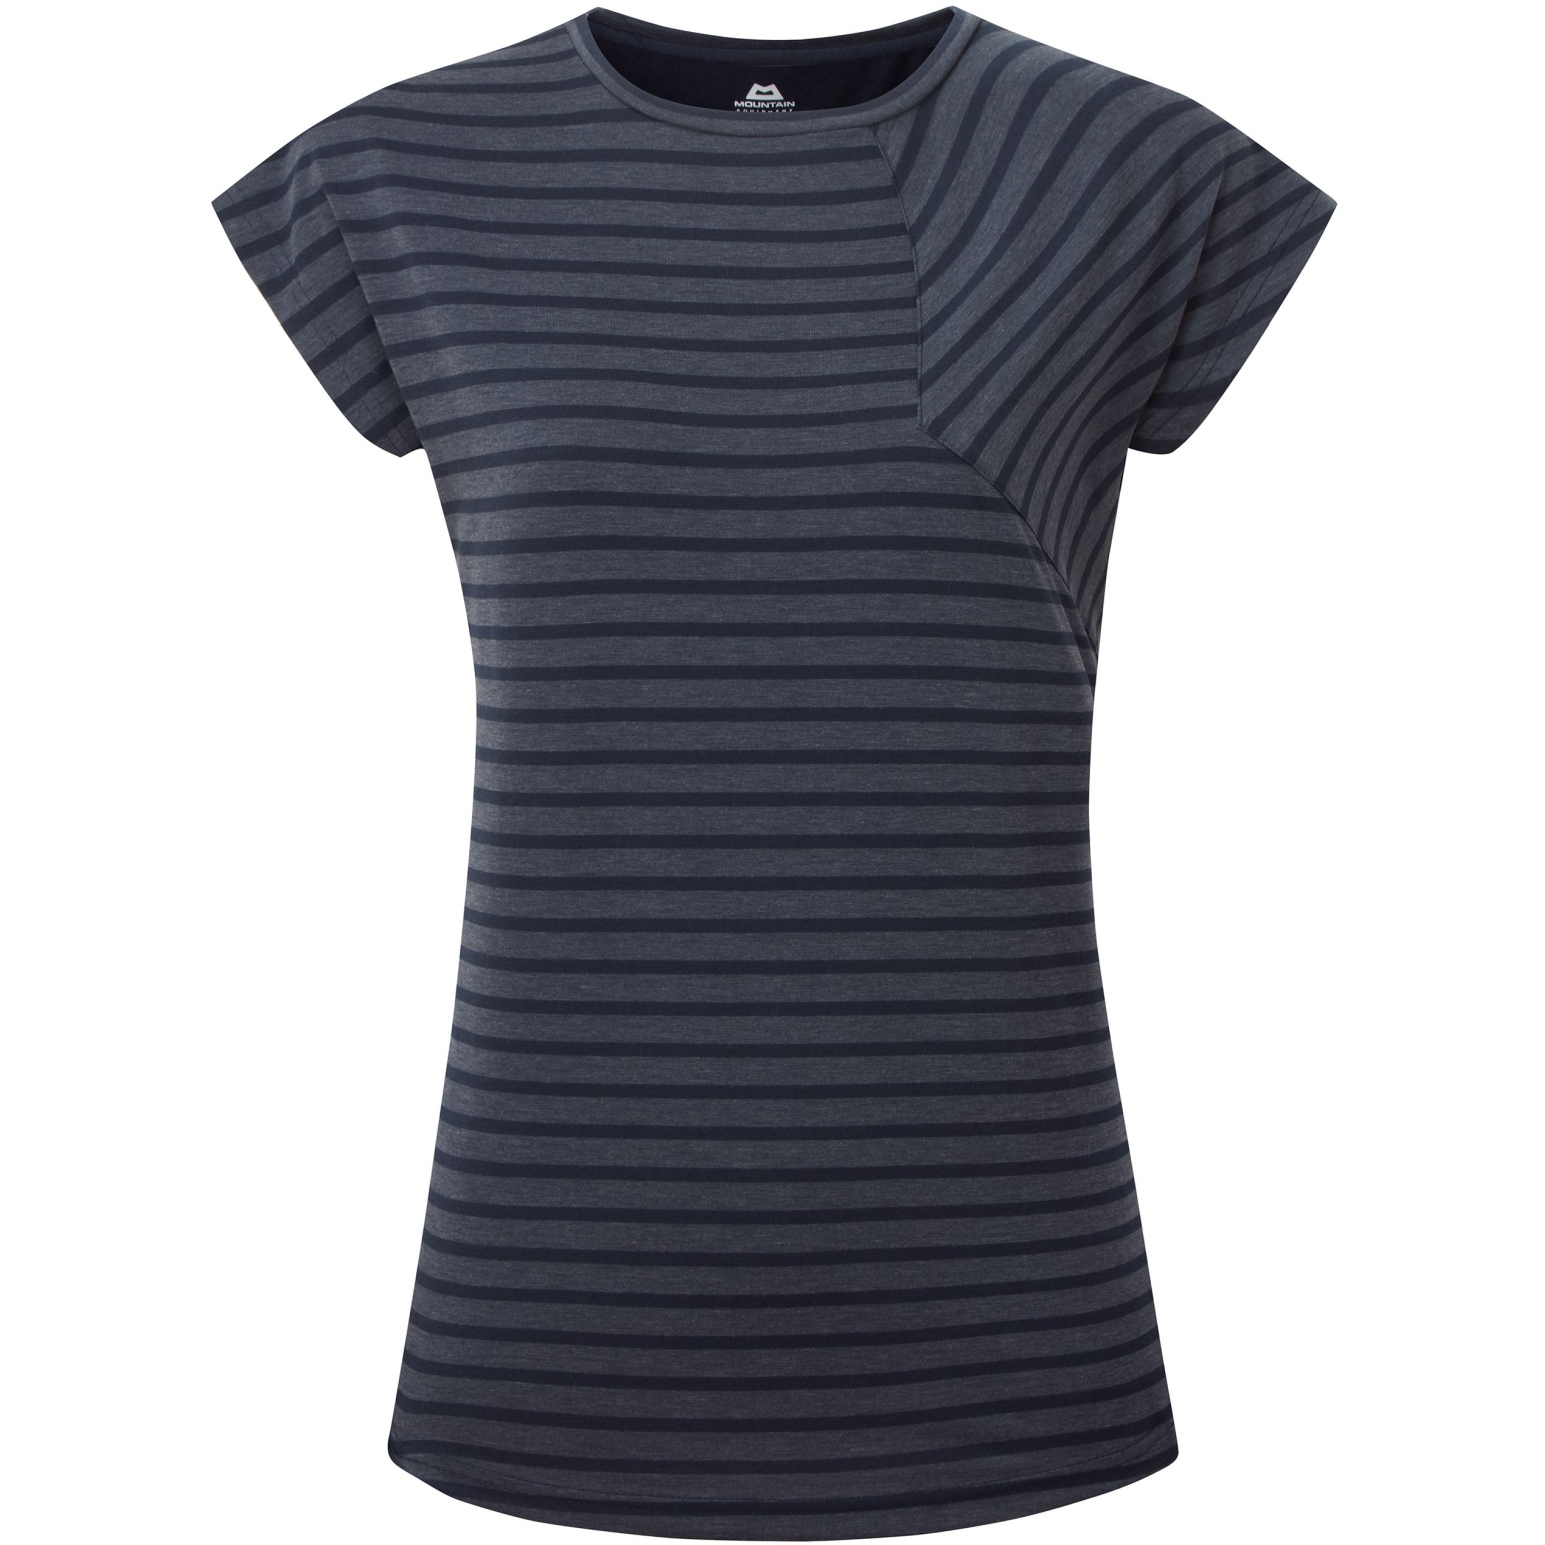 Produktbild von Mountain Equipment Silhouette T-Shirt Damen ME-006647 - cosmos stripe/cosmos